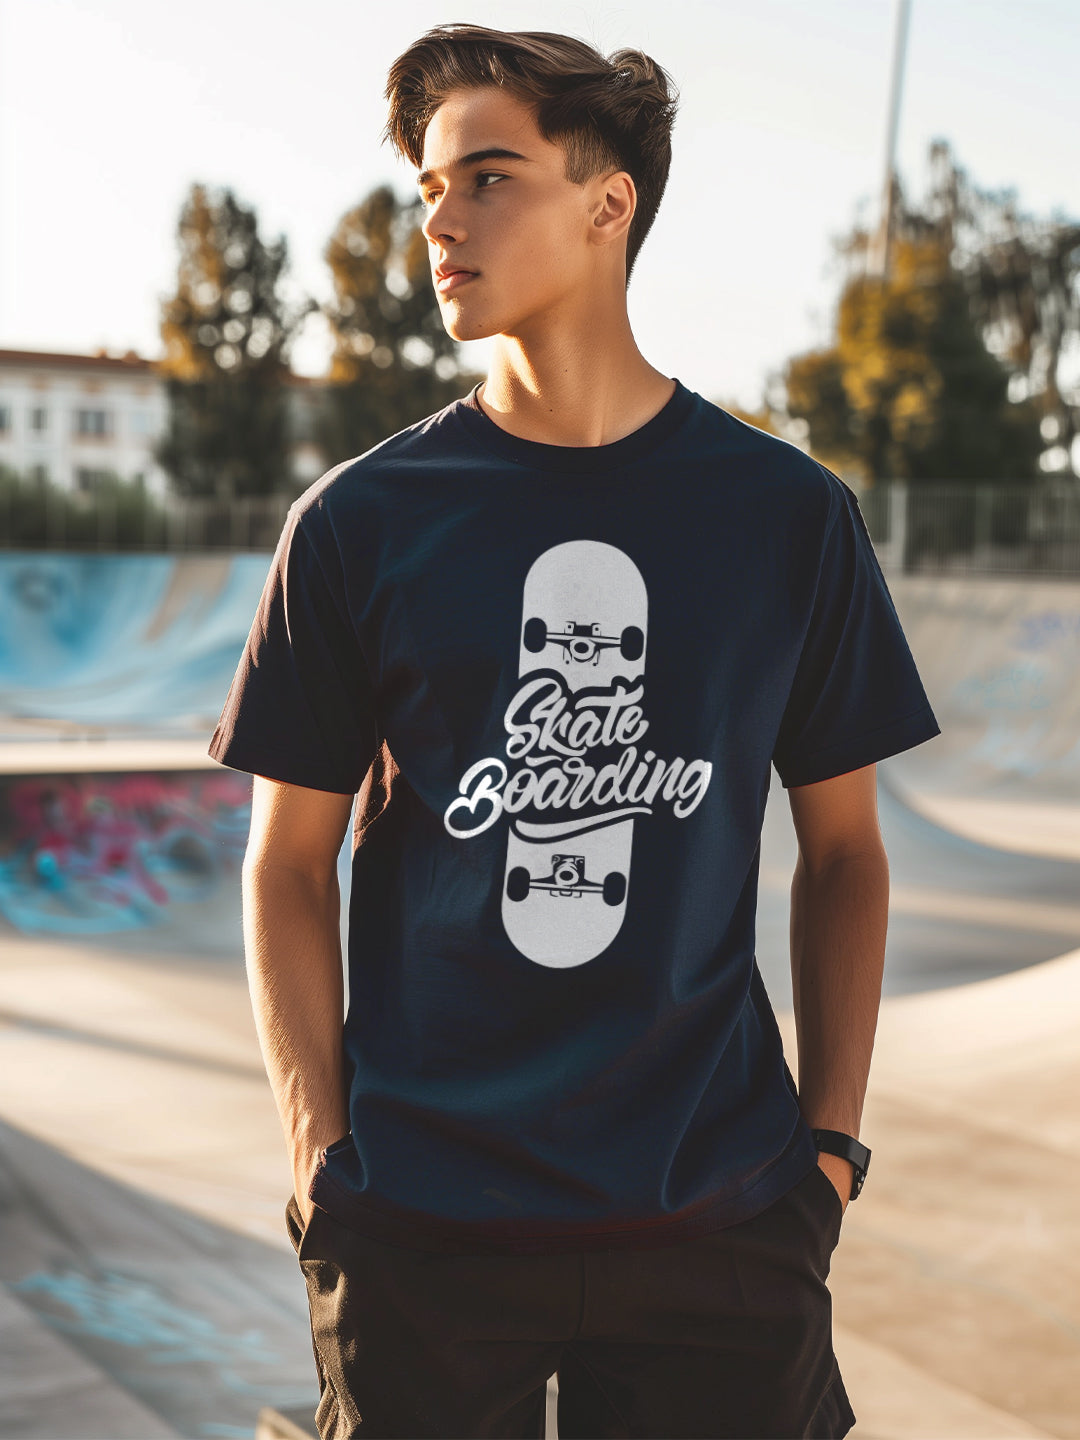 Skateboarding T-Shirt